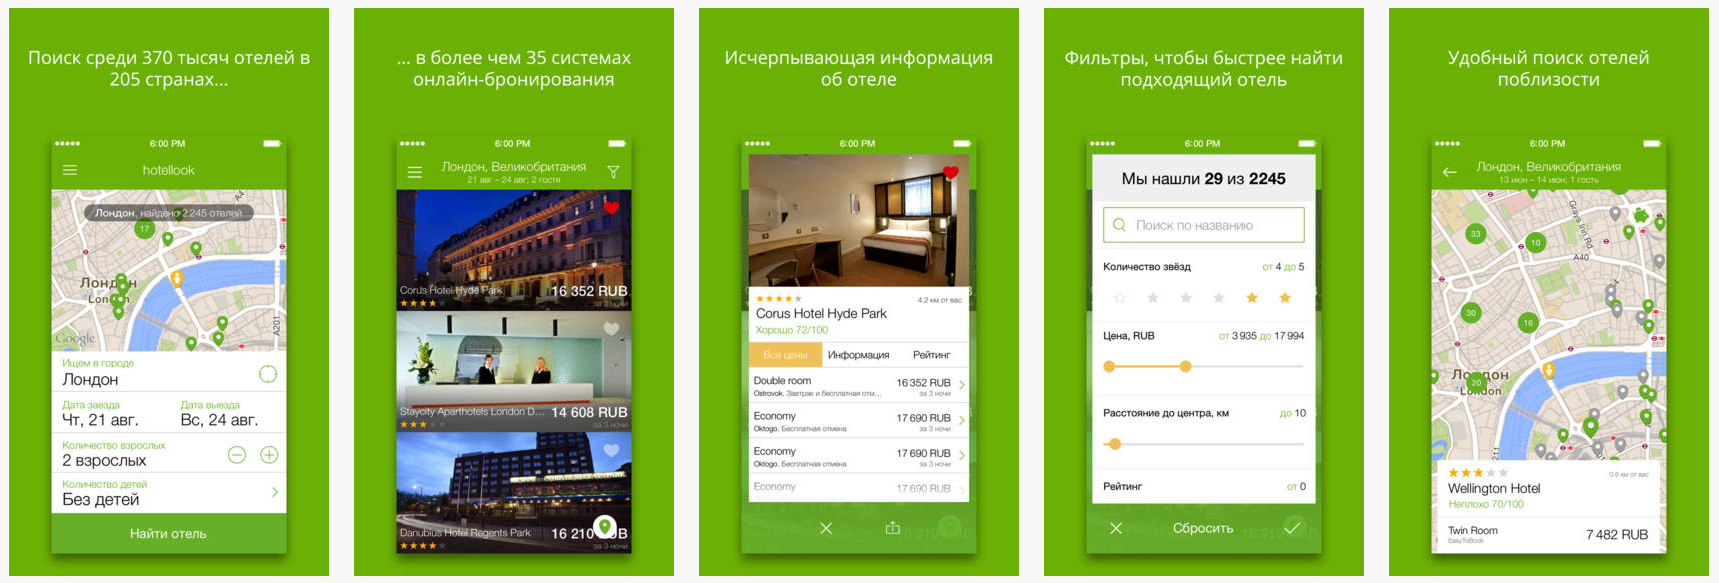 У Hotellook, мета поисковика по отелям от Aviasales, появилось приложение для iOS